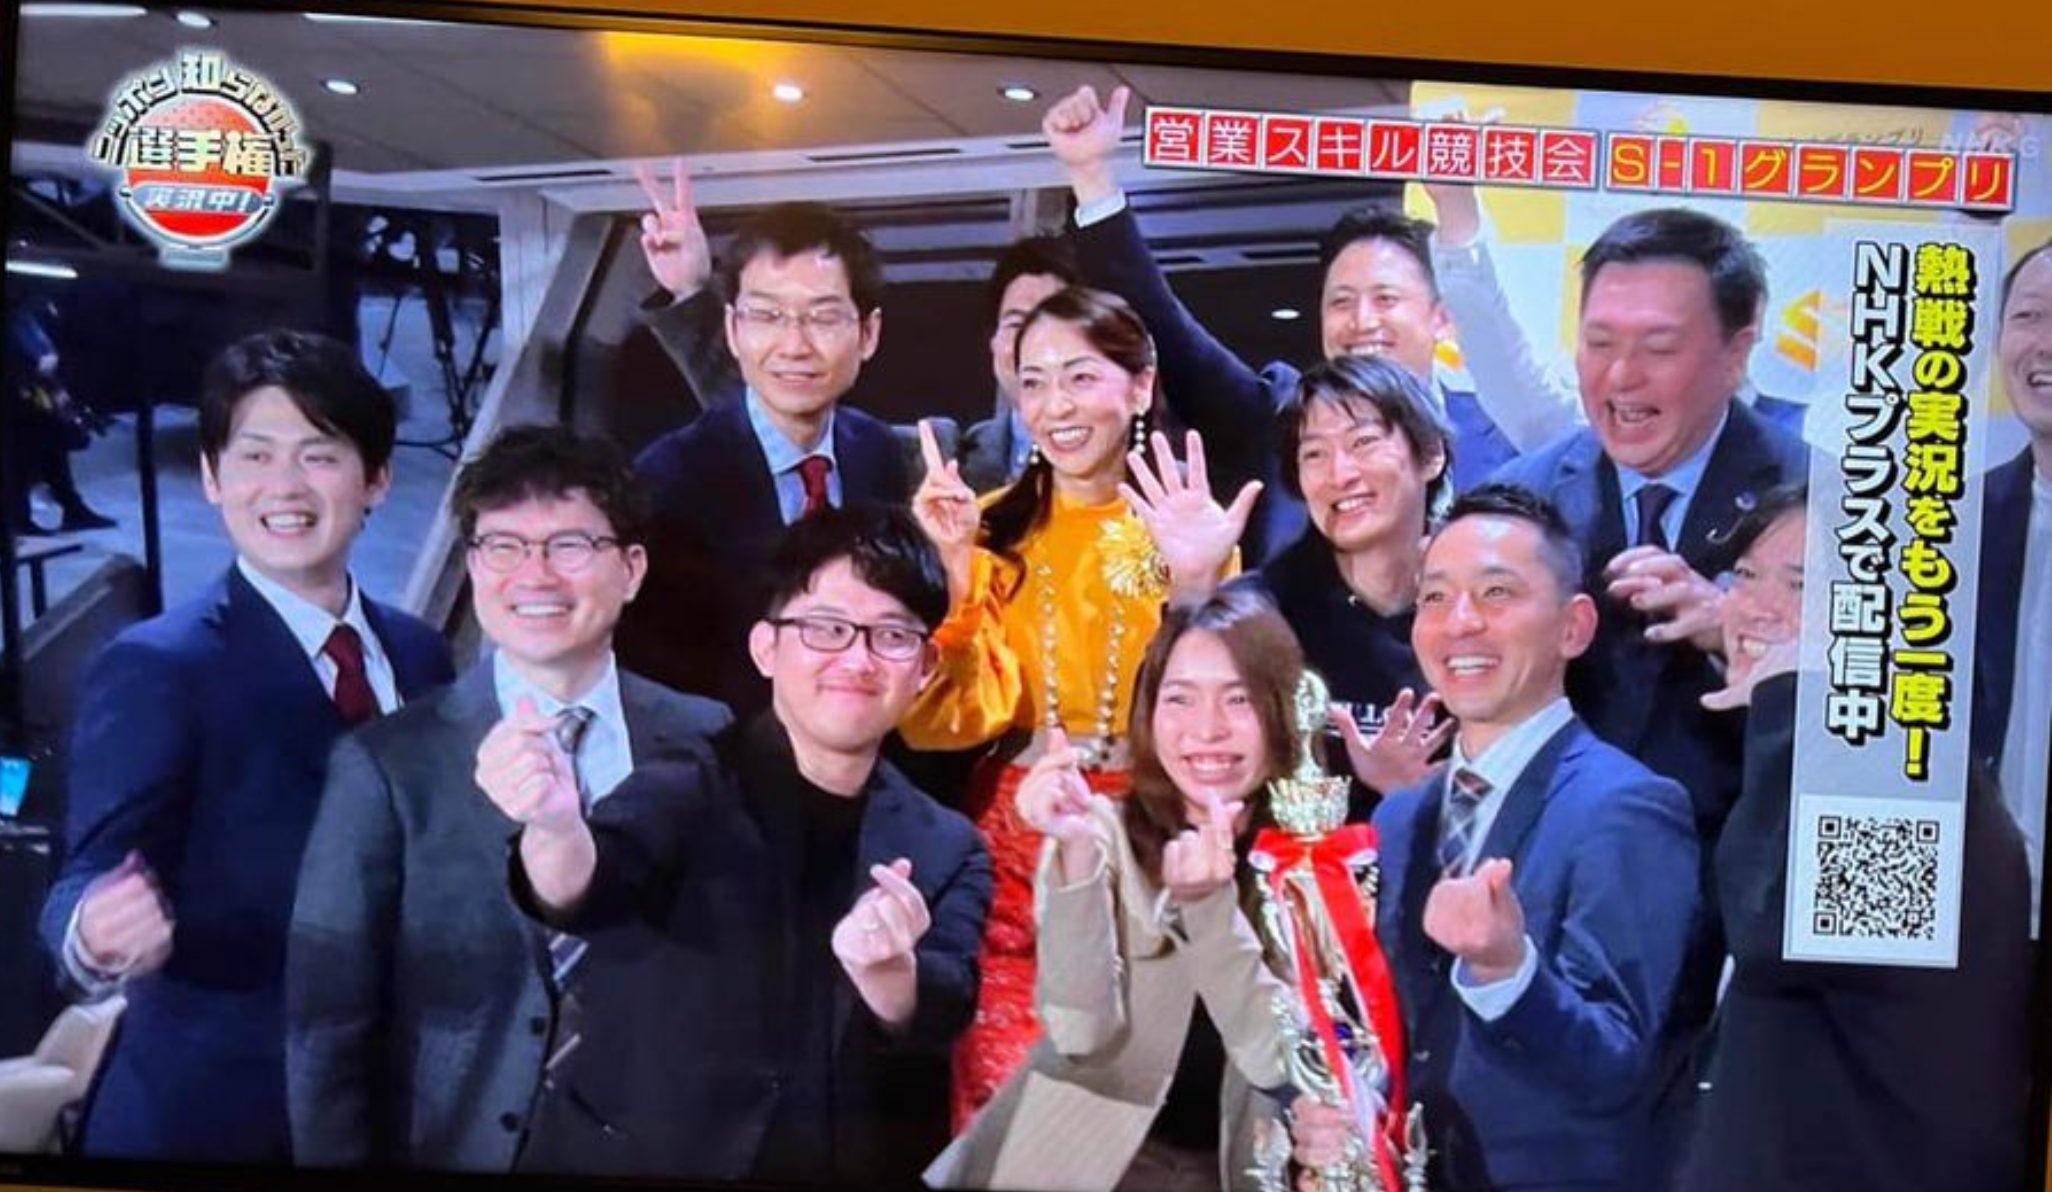 「S1グランプリ」NHK”ニッポン知らなかった選手権”にて単独放送